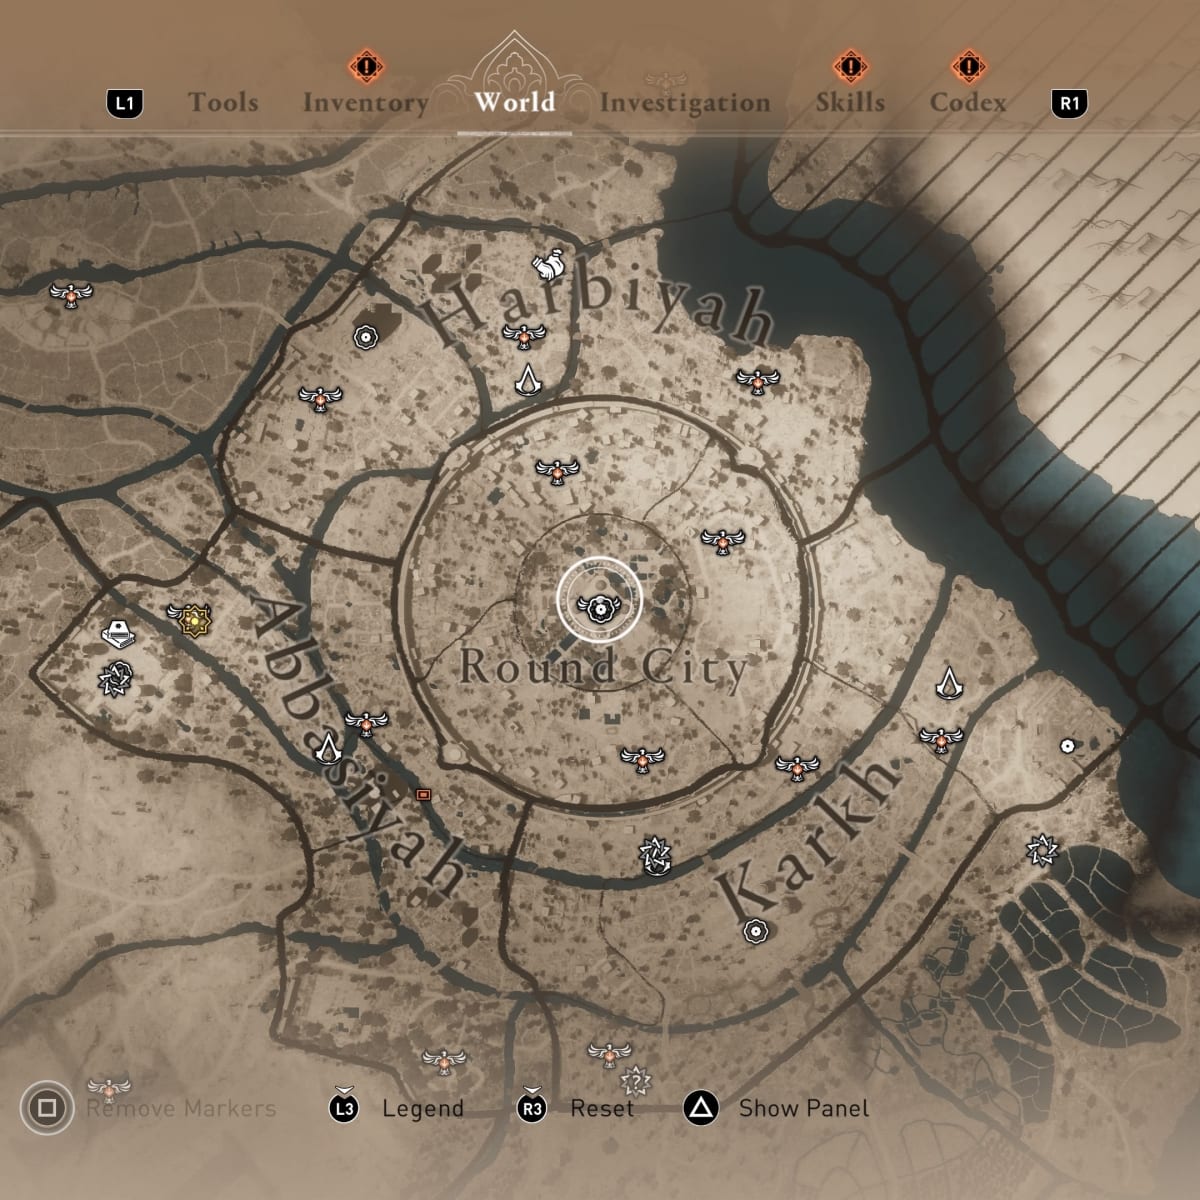 Assassin's Creed Mirage parece um reboot (e isso é ótimo!); testamos